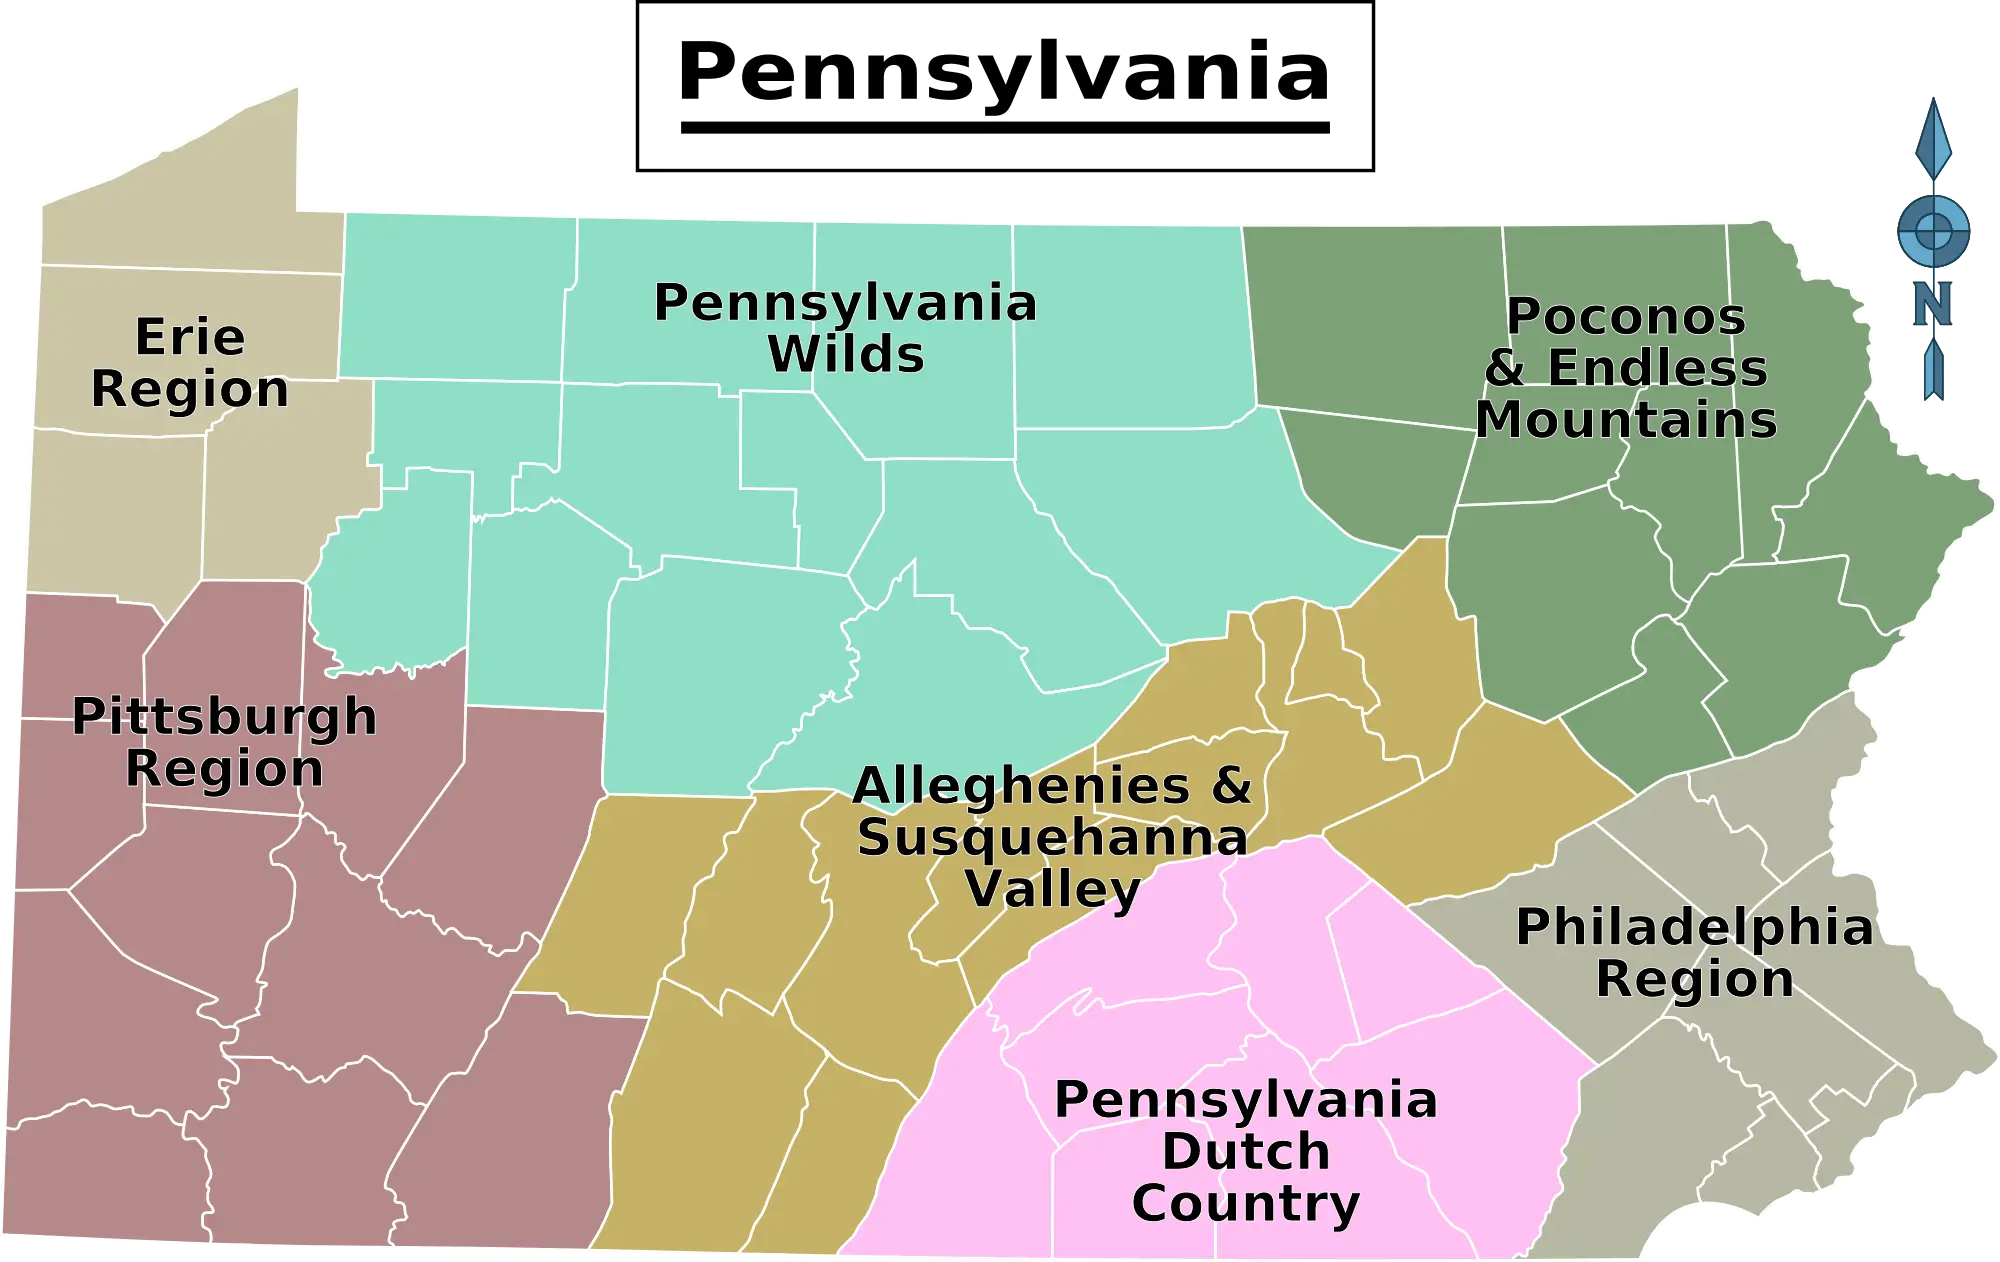 Pennsylvania_bolgeler_harita.png